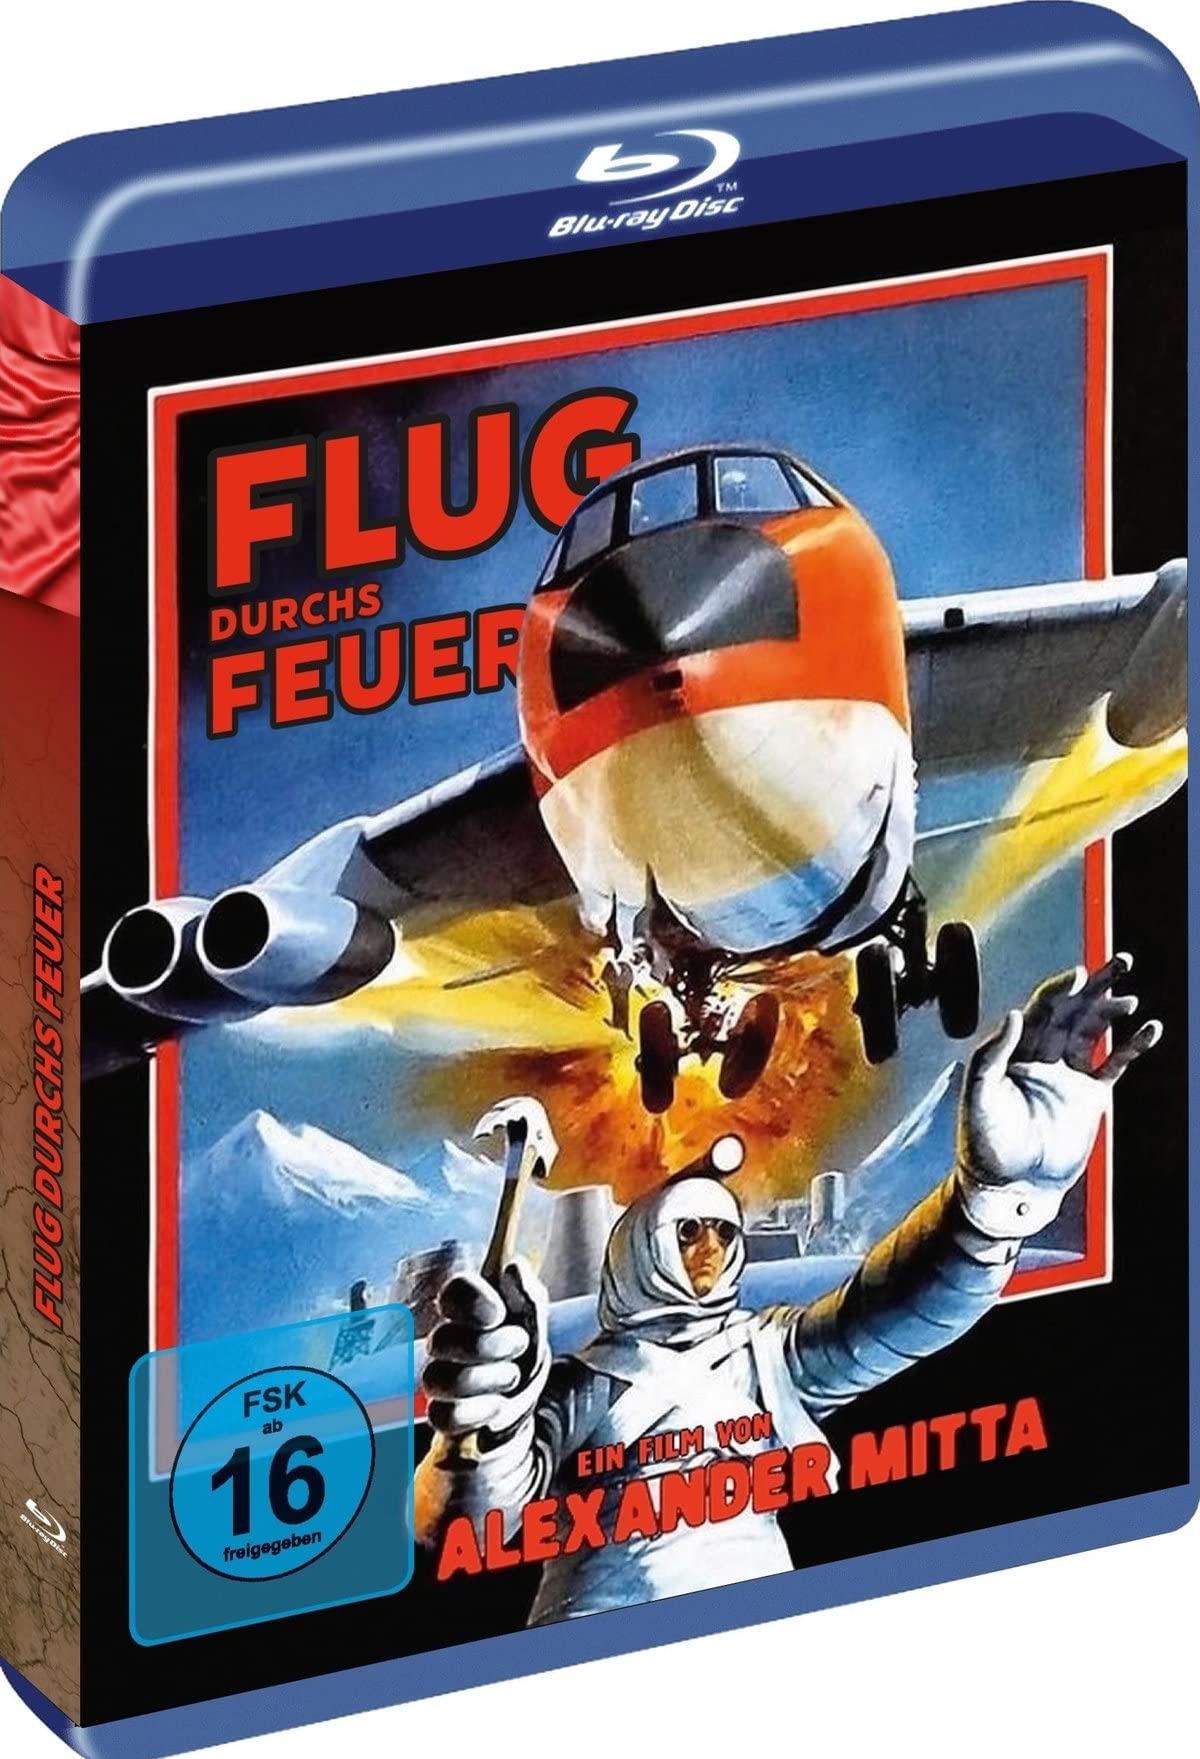 Flug durchs Feuer (Air Crew ? Die Besatzung) Cover A - Blu-Ray Weltpremiere - Ungekürtzte Langfassung- Limitierte Auflage auf 500 Stück. (Neu differenzbesteuert)